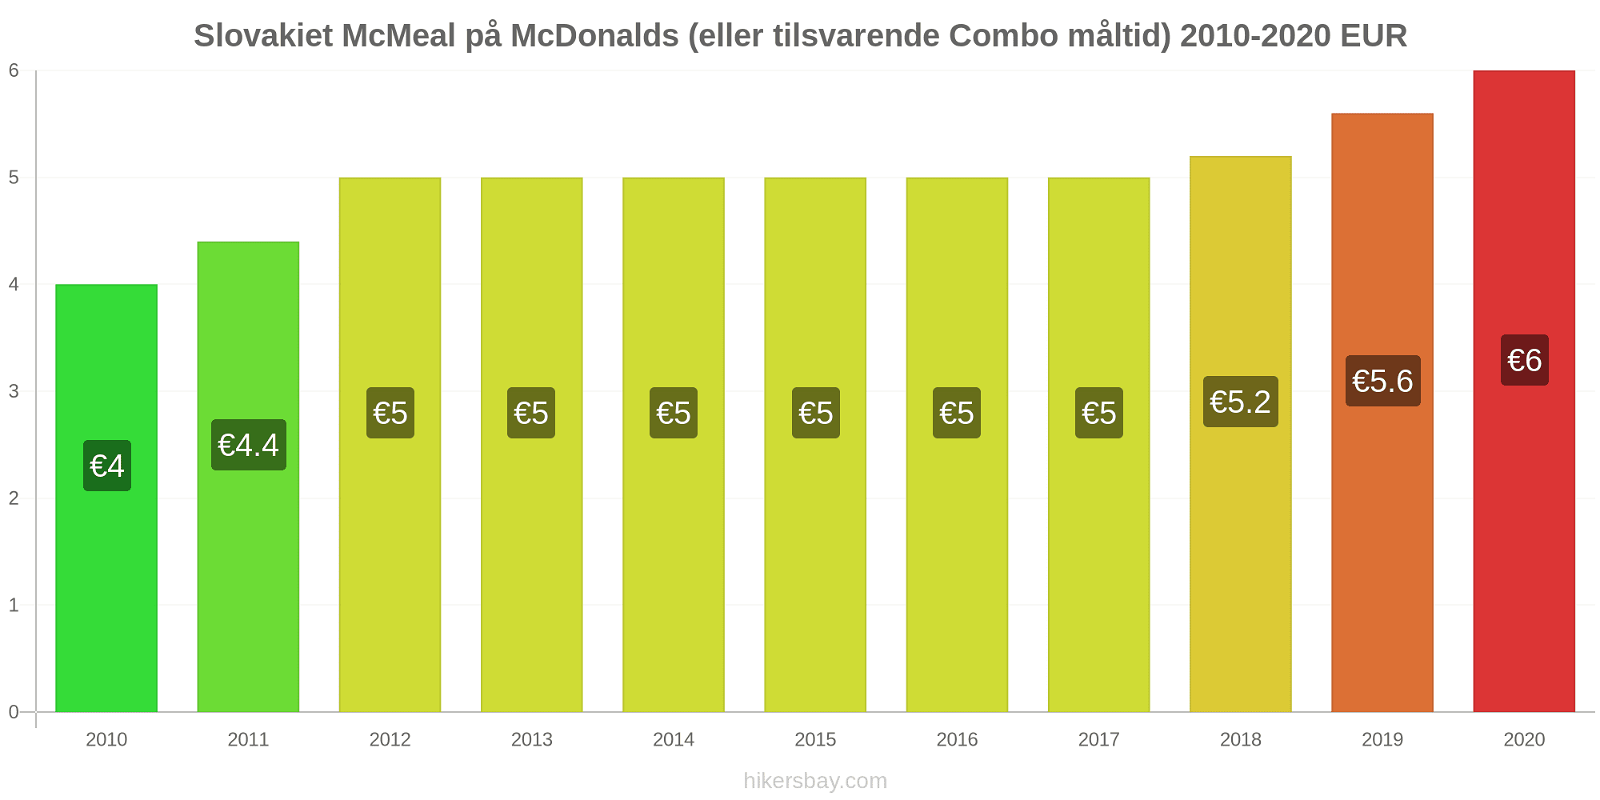 Slovakiet prisændringer McMeal på McDonalds (eller tilsvarende Combo måltid) hikersbay.com